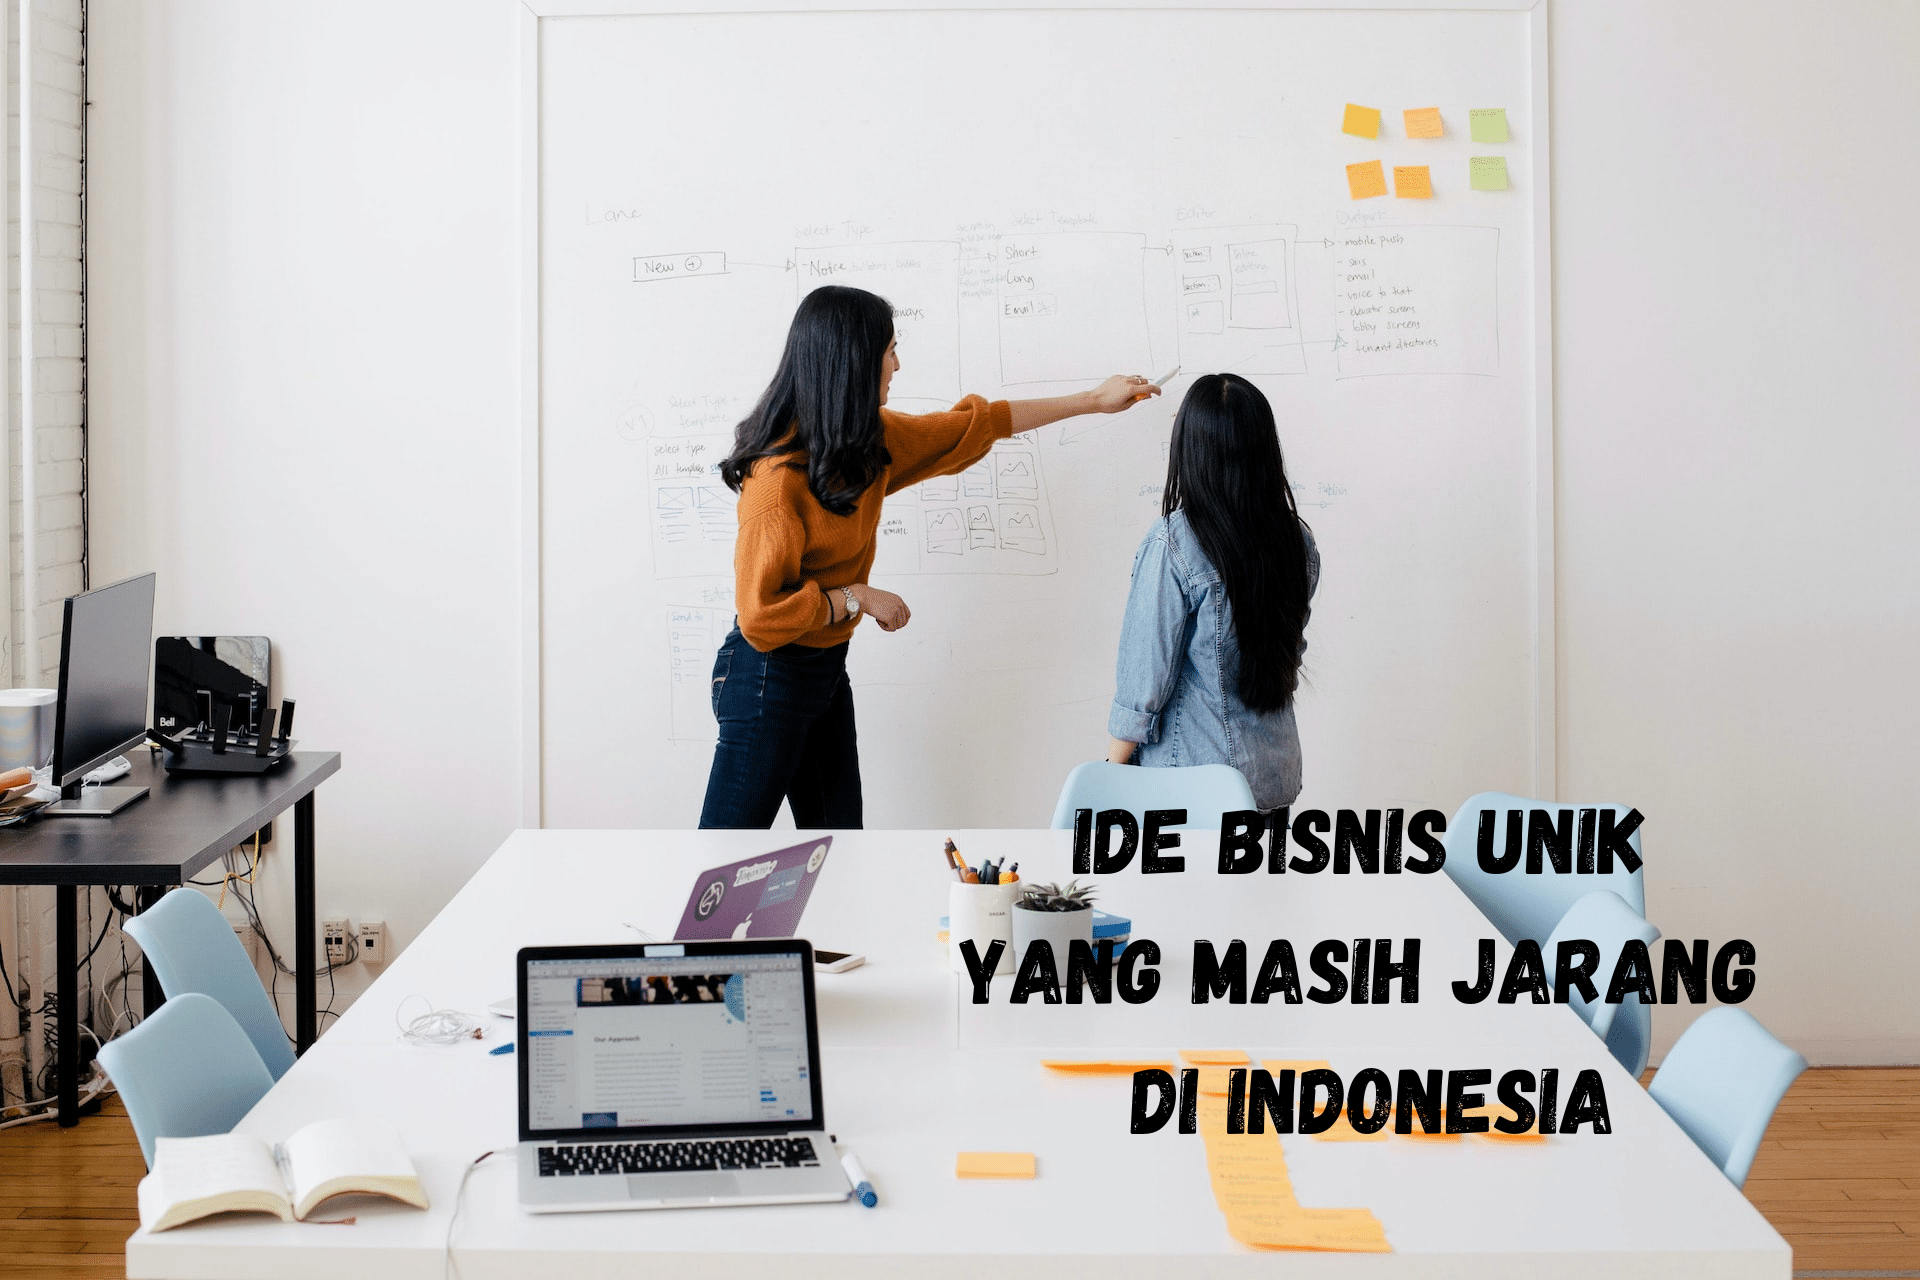 Ide Bisnis Unik yang Masih Jarang di Indonesia